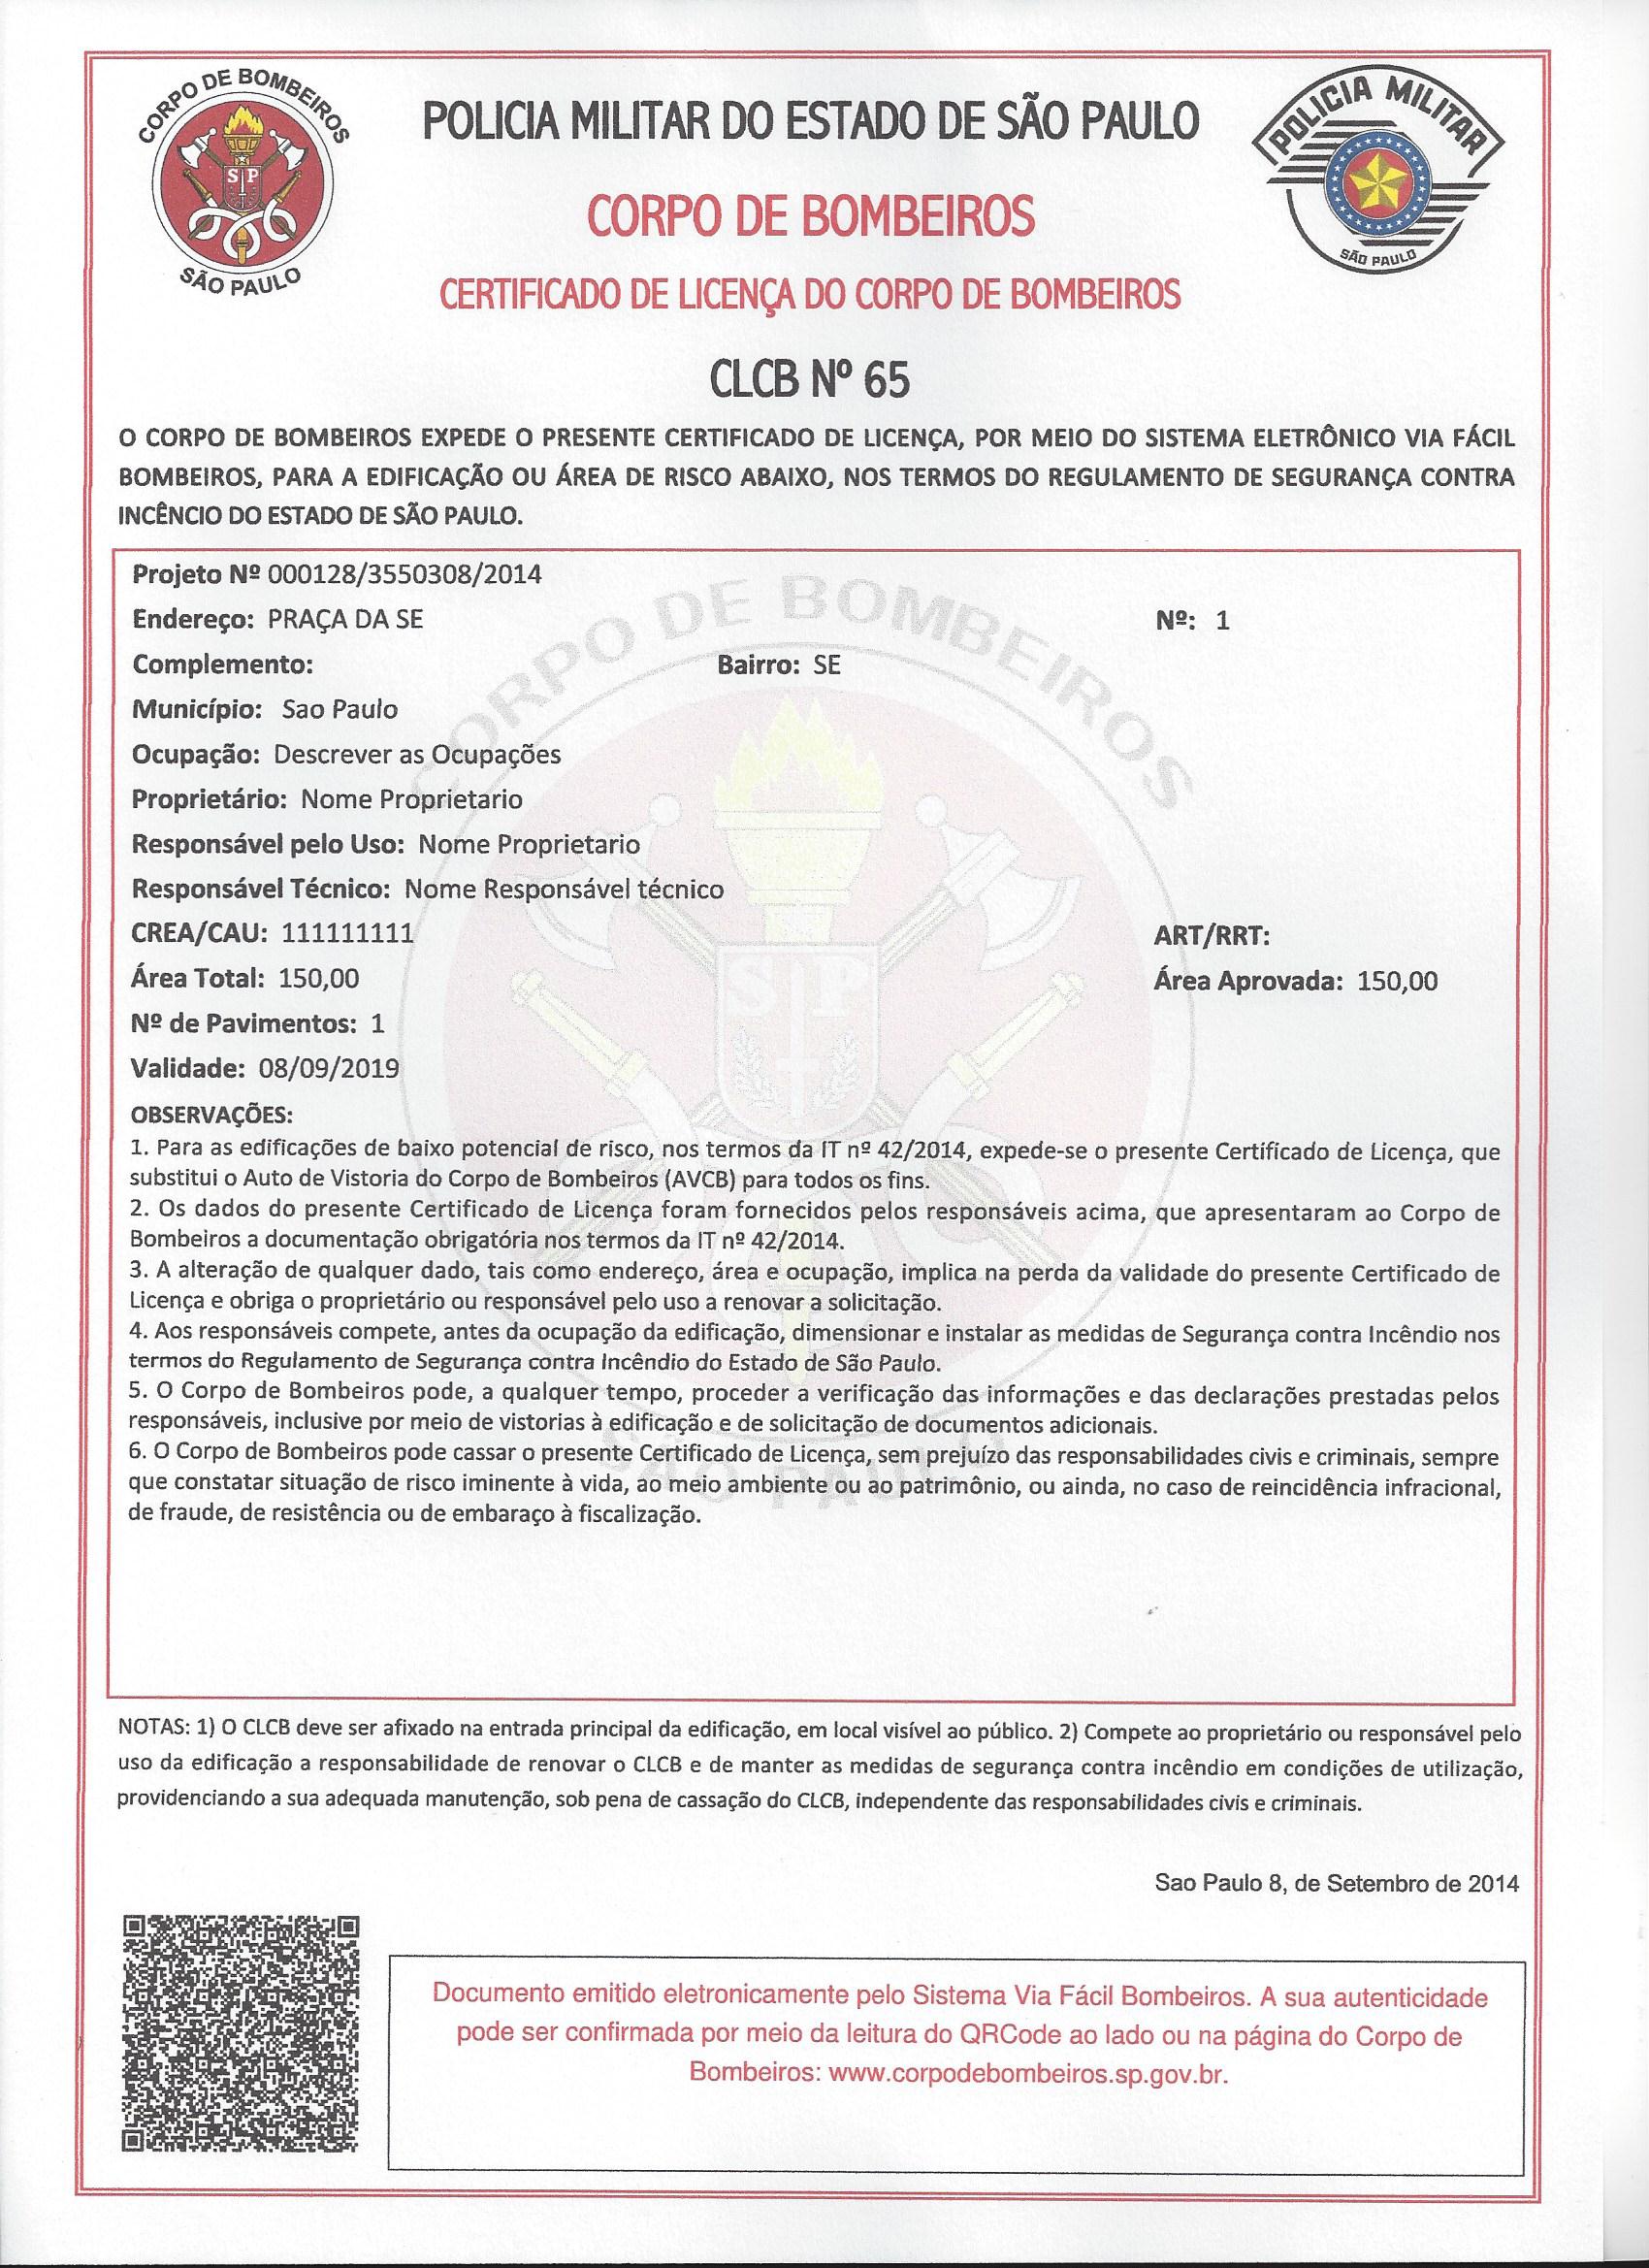 CLCB - Certificado de Licença do Corpo de Bombeiros